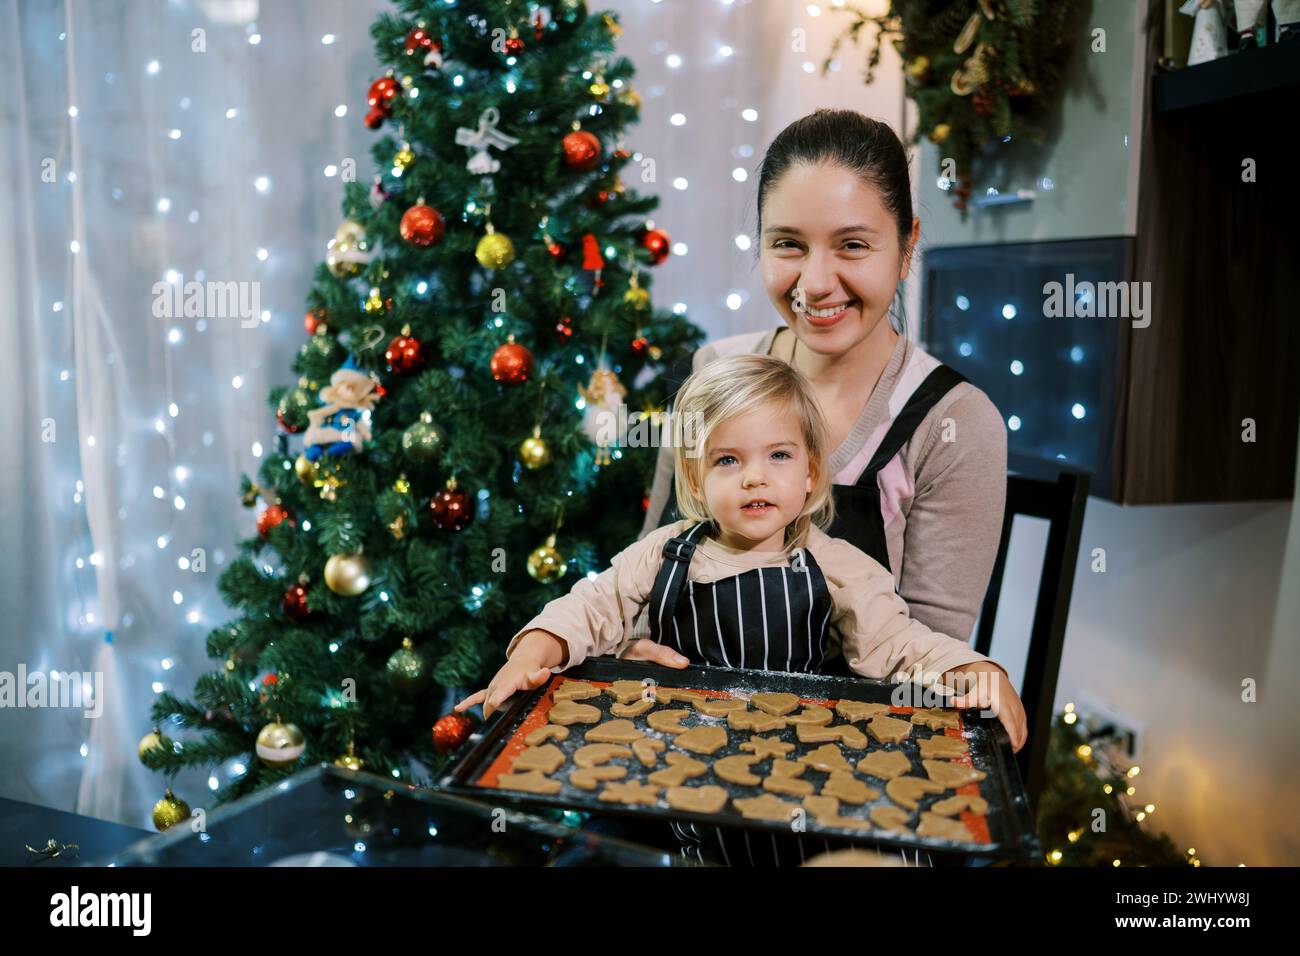 Mère souriante avec petite fille assise à la table avec une plaque de cuisson de biscuits de Noël crus Banque D'Images